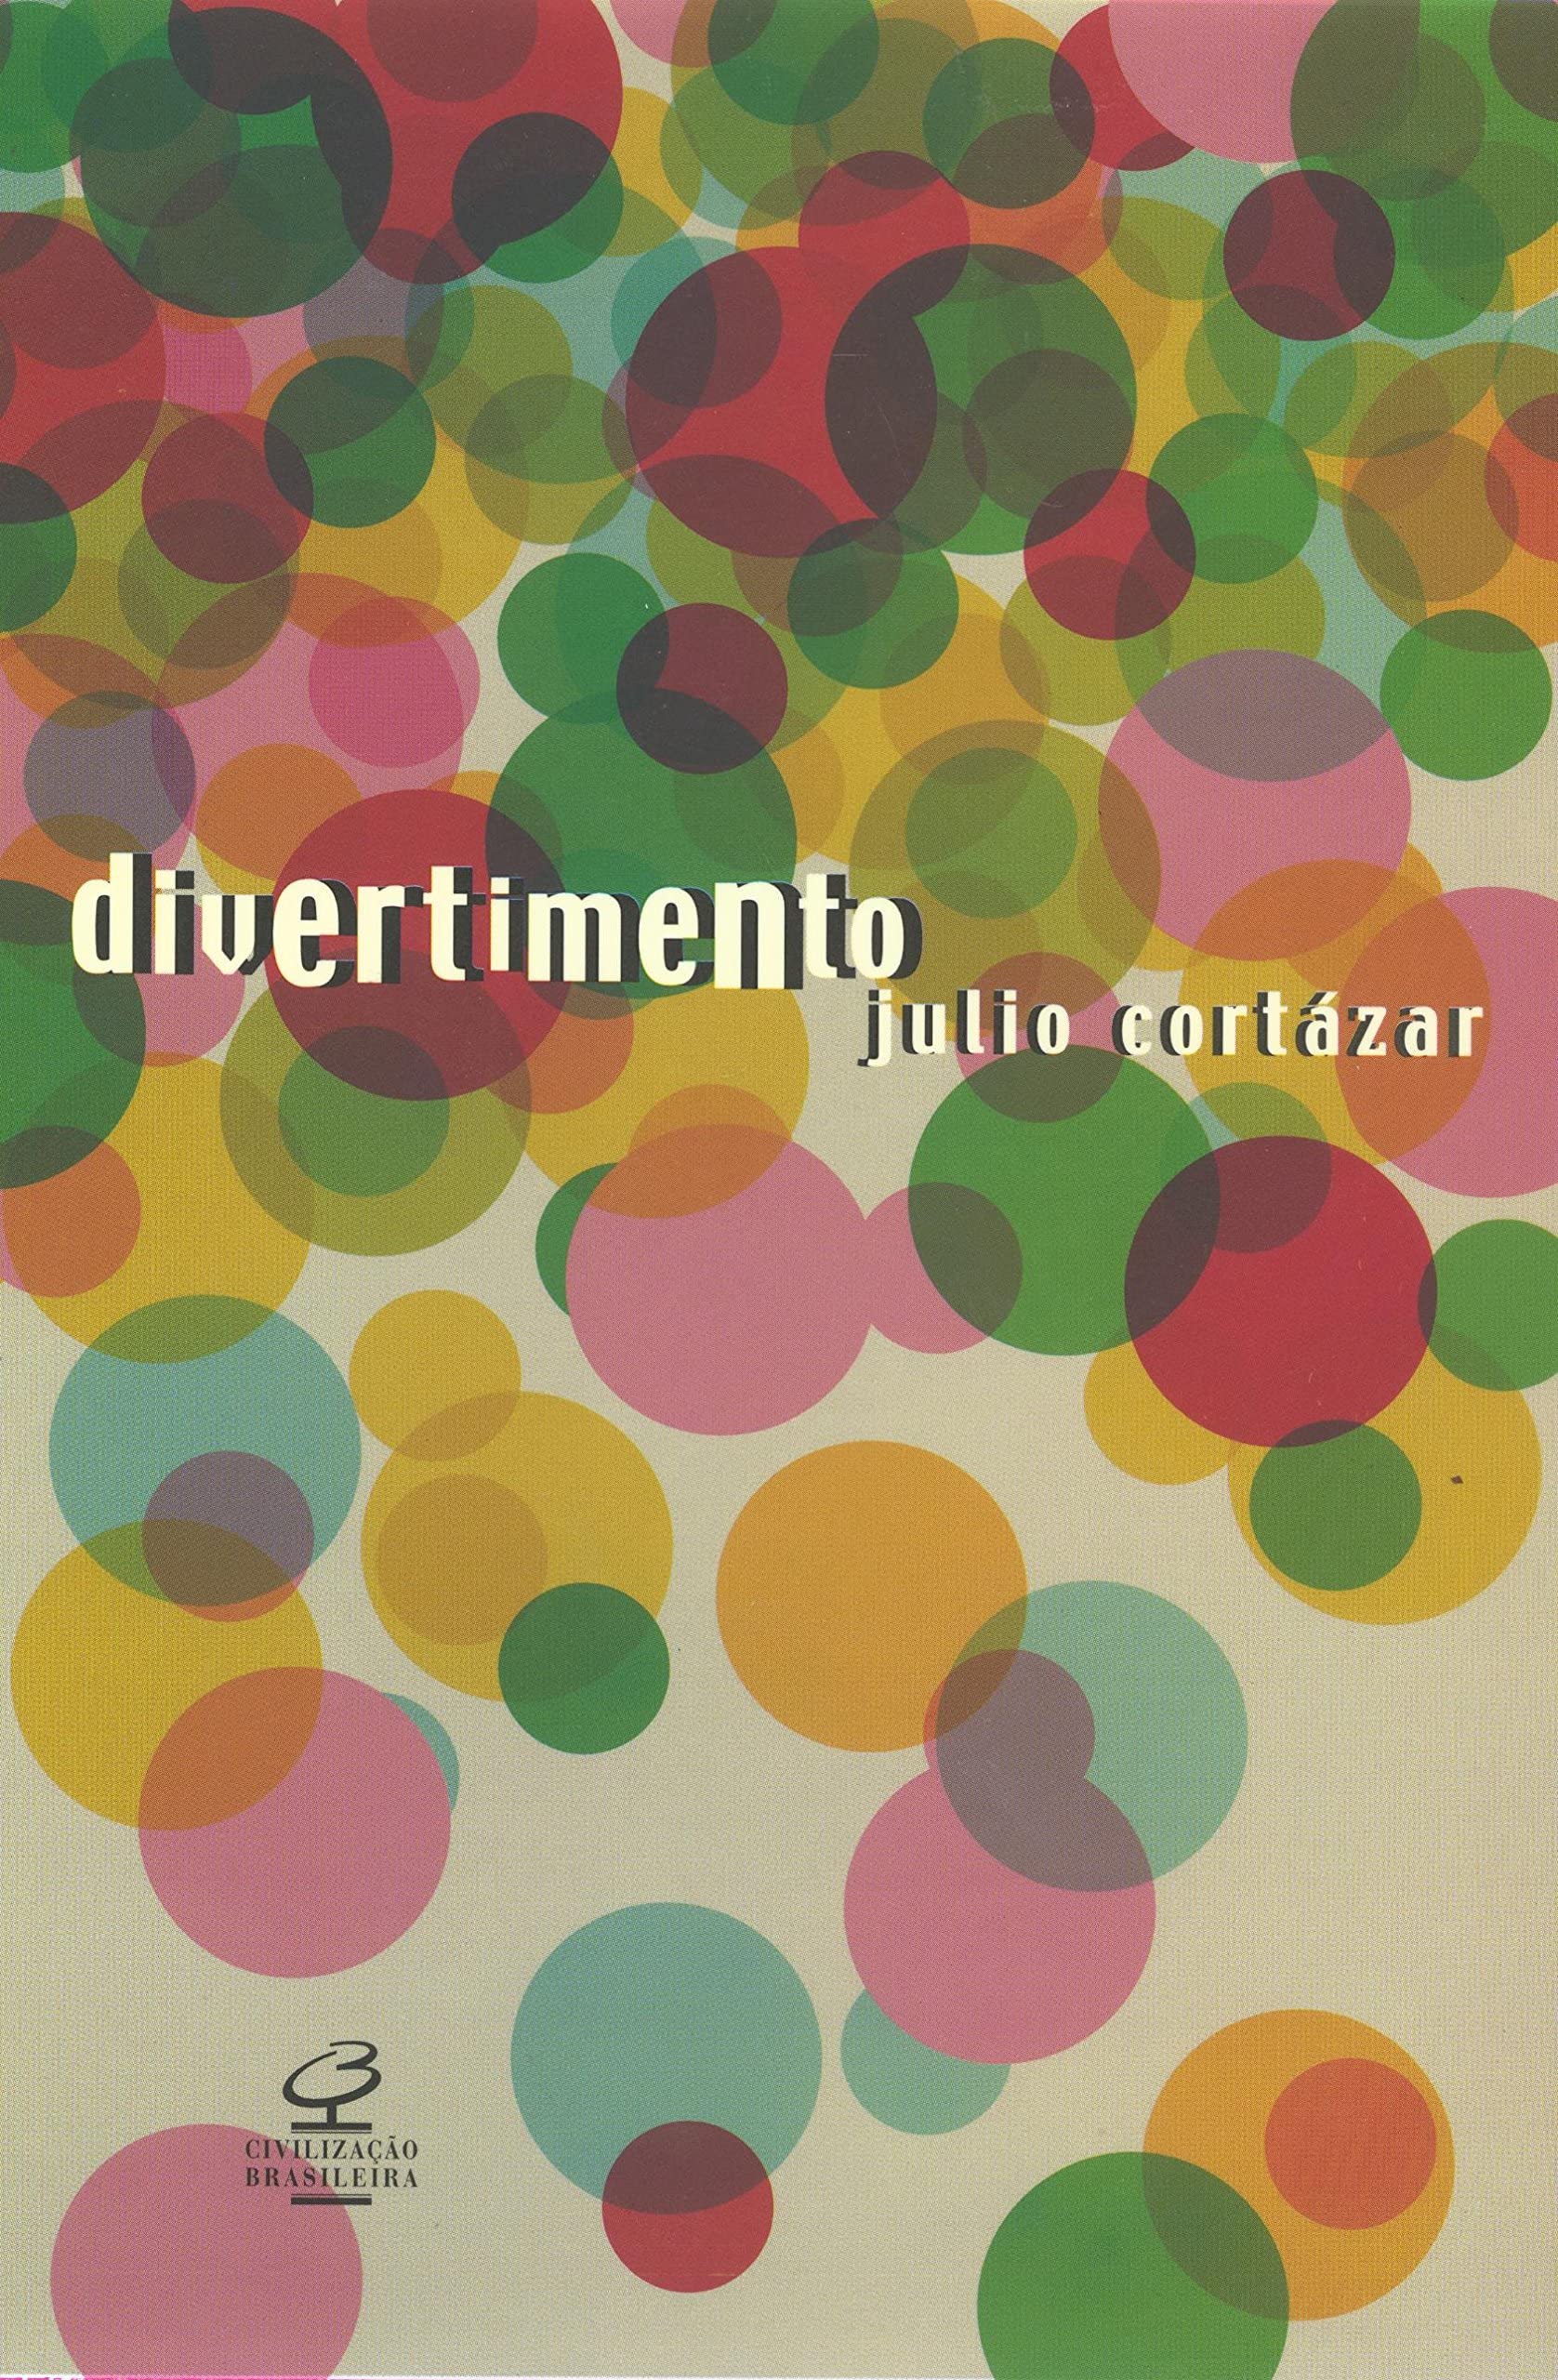 Julio Cortazar: Divertimento (Paperback, Português language, 2003, Civilização Brasileira)